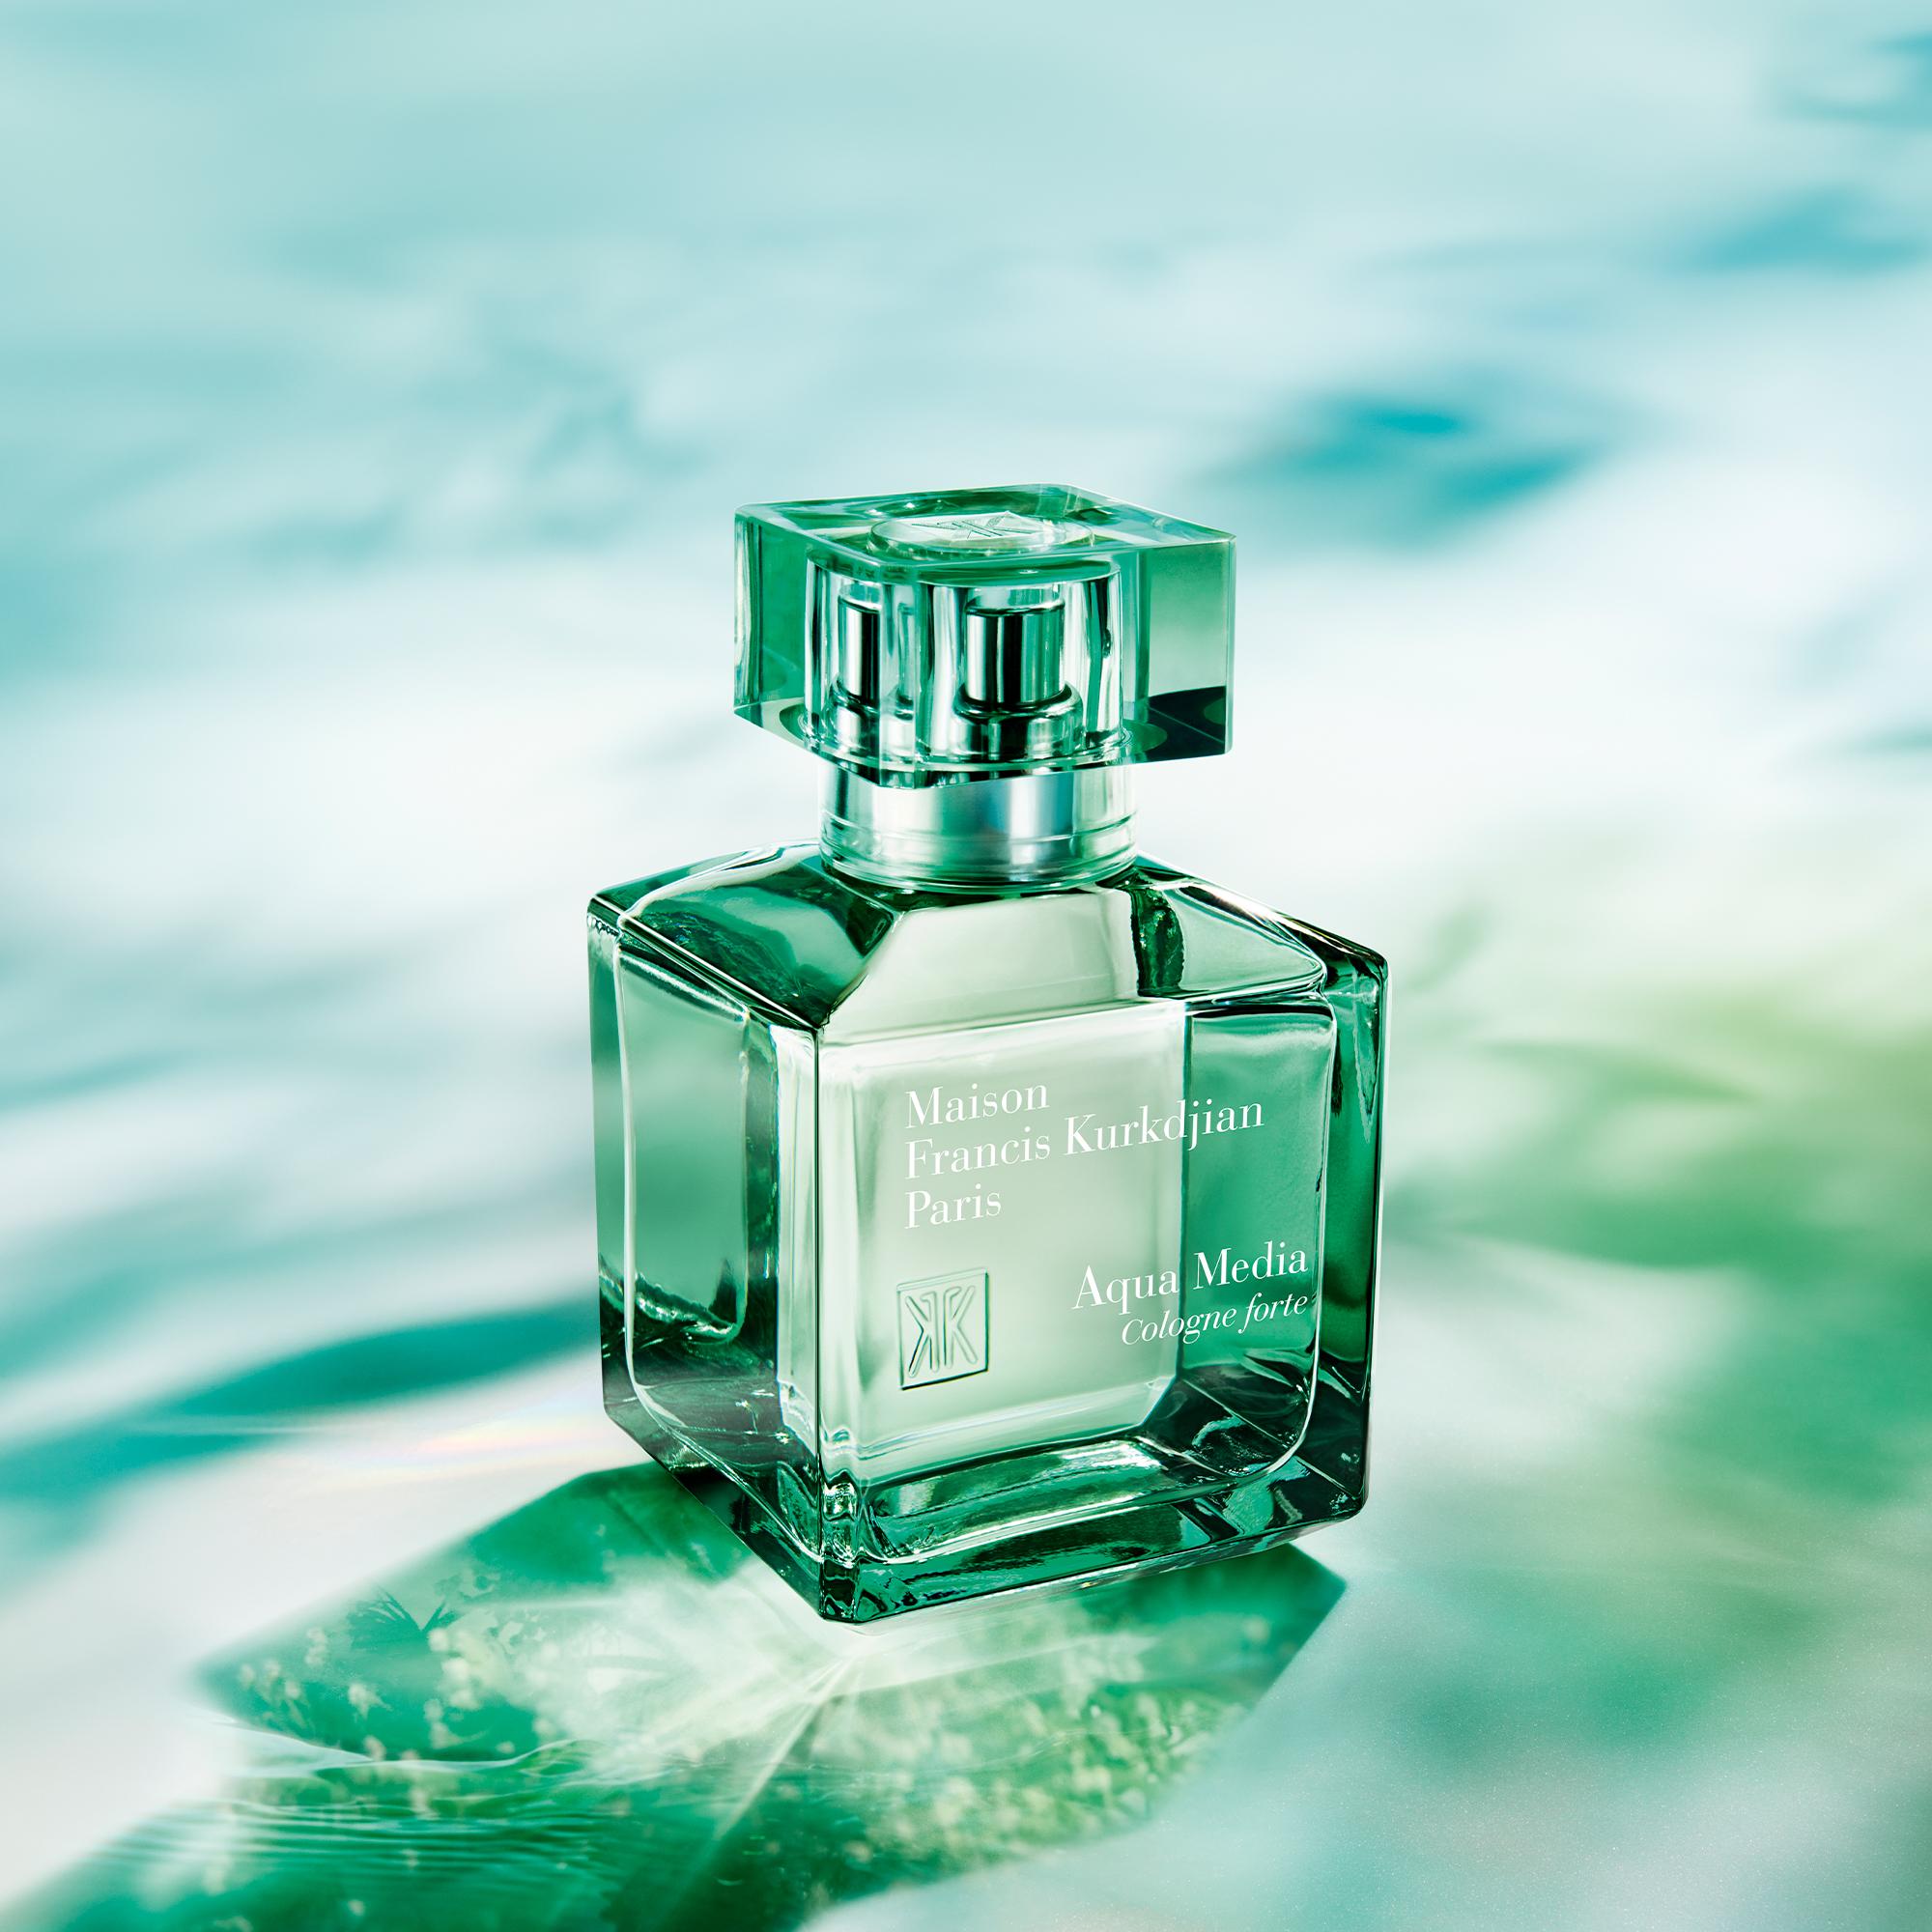 Aqua Media Cologne Forte - eau de parfum